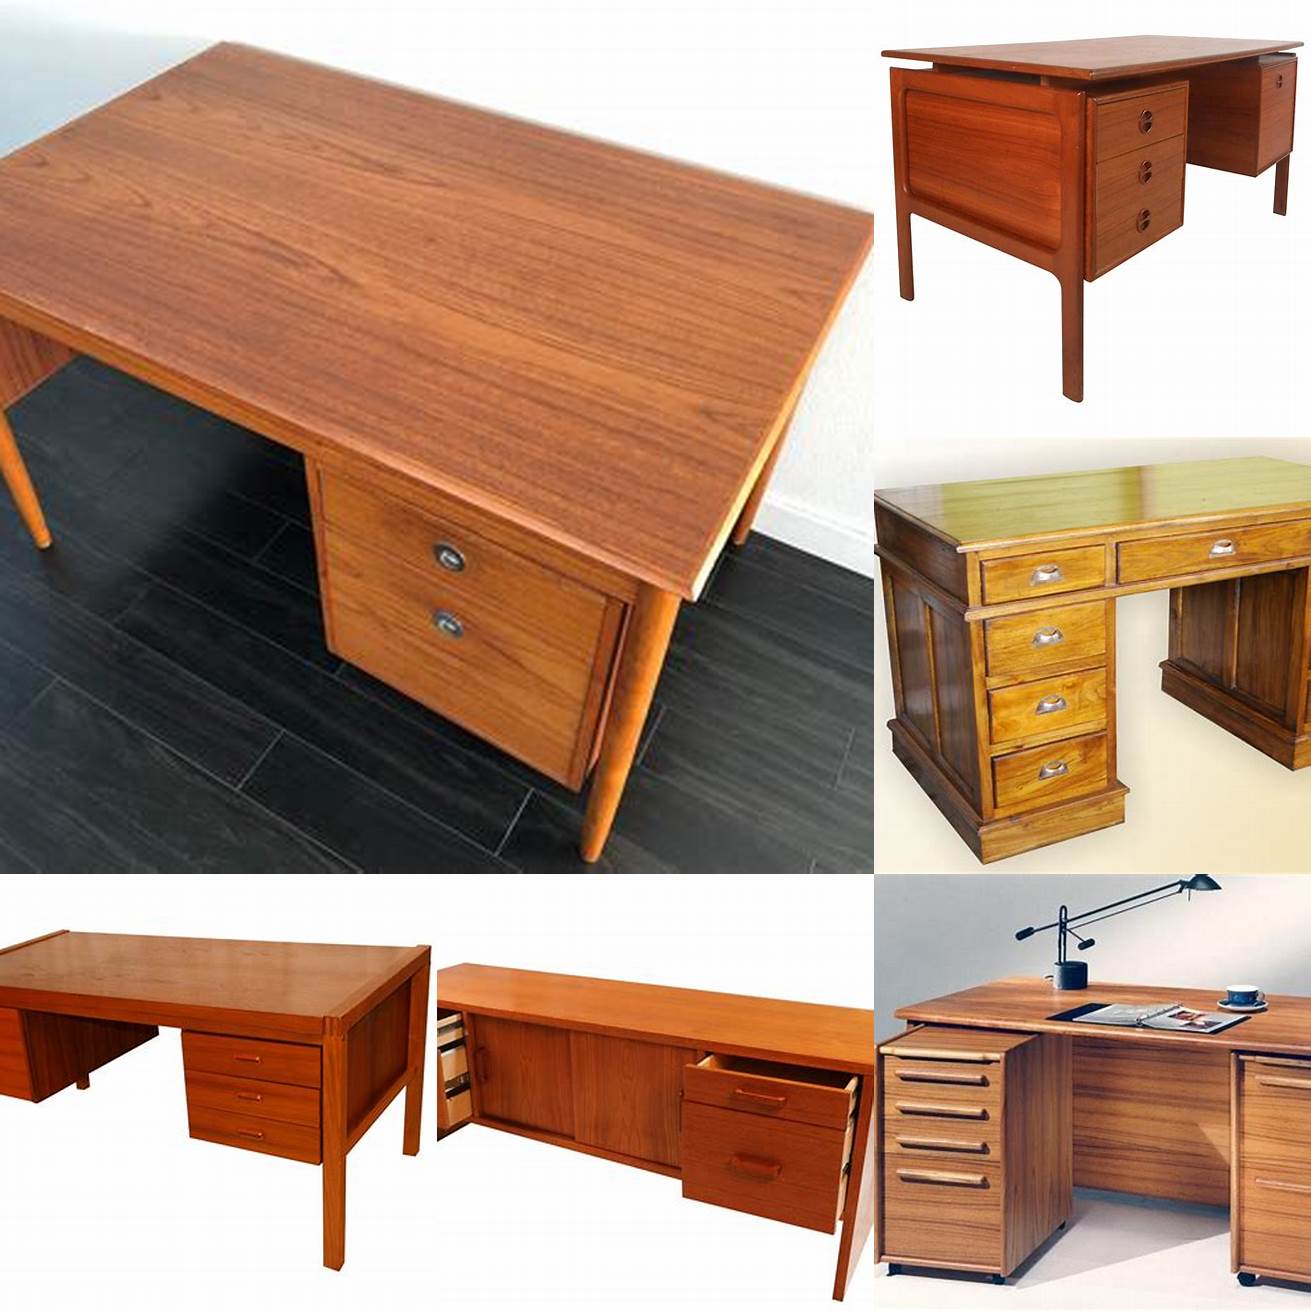 Jacobs Teak Furniture Desk